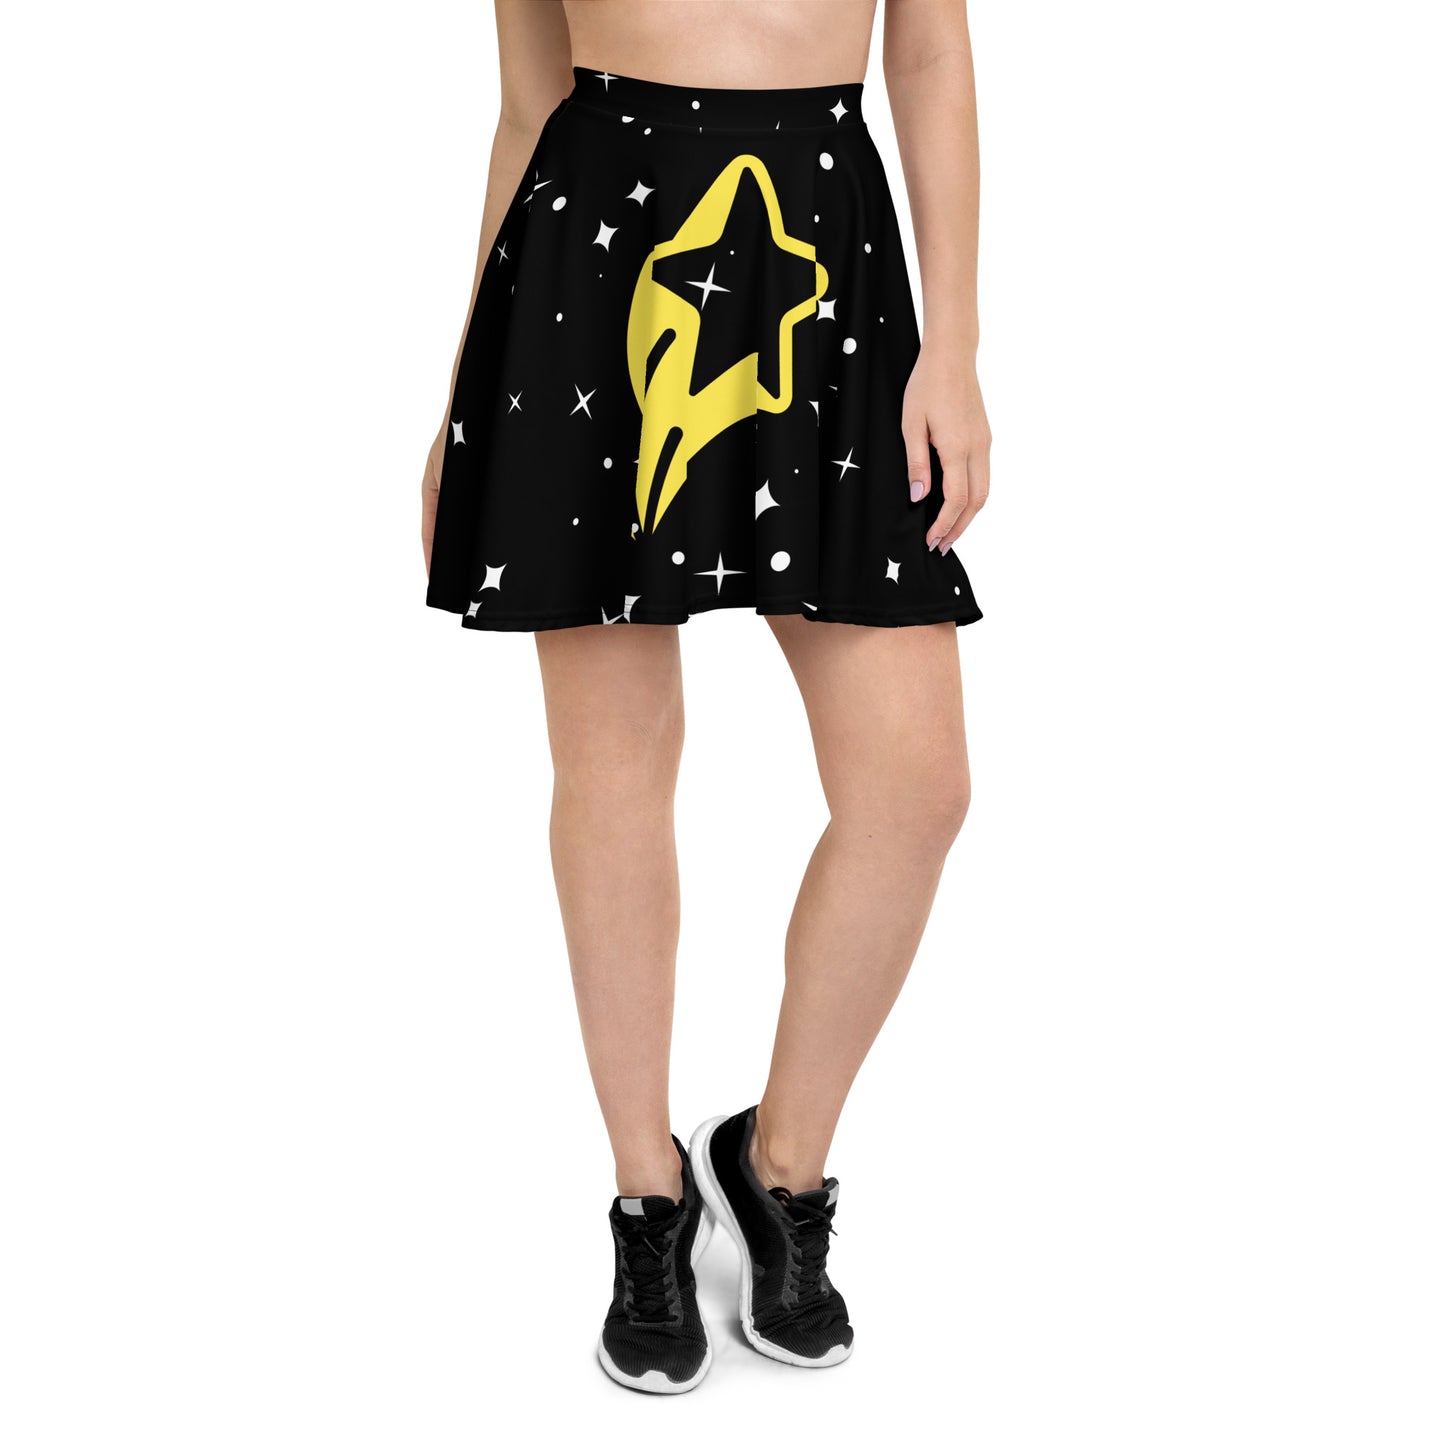 Starry Night Skirt - Skater Skirt - ELLACO